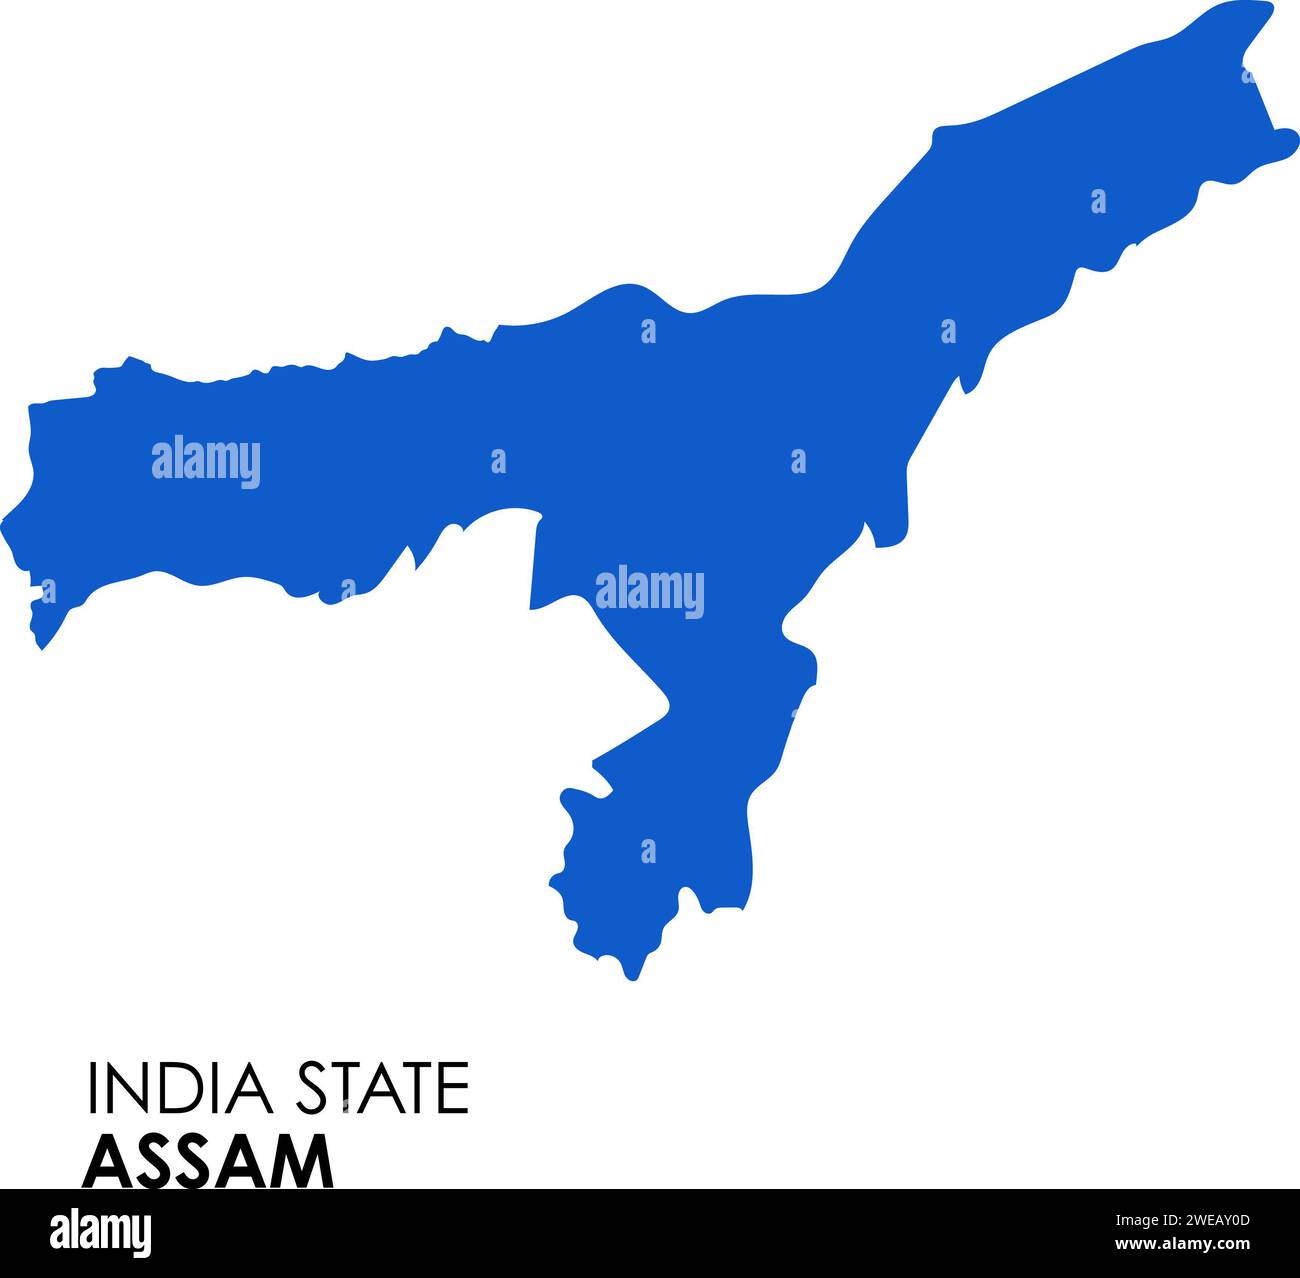 Carte Assam de l'état indien. Illustration vectorielle de carte Assam. Carte vectorielle Assam sur fond blanc. Banque D'Images